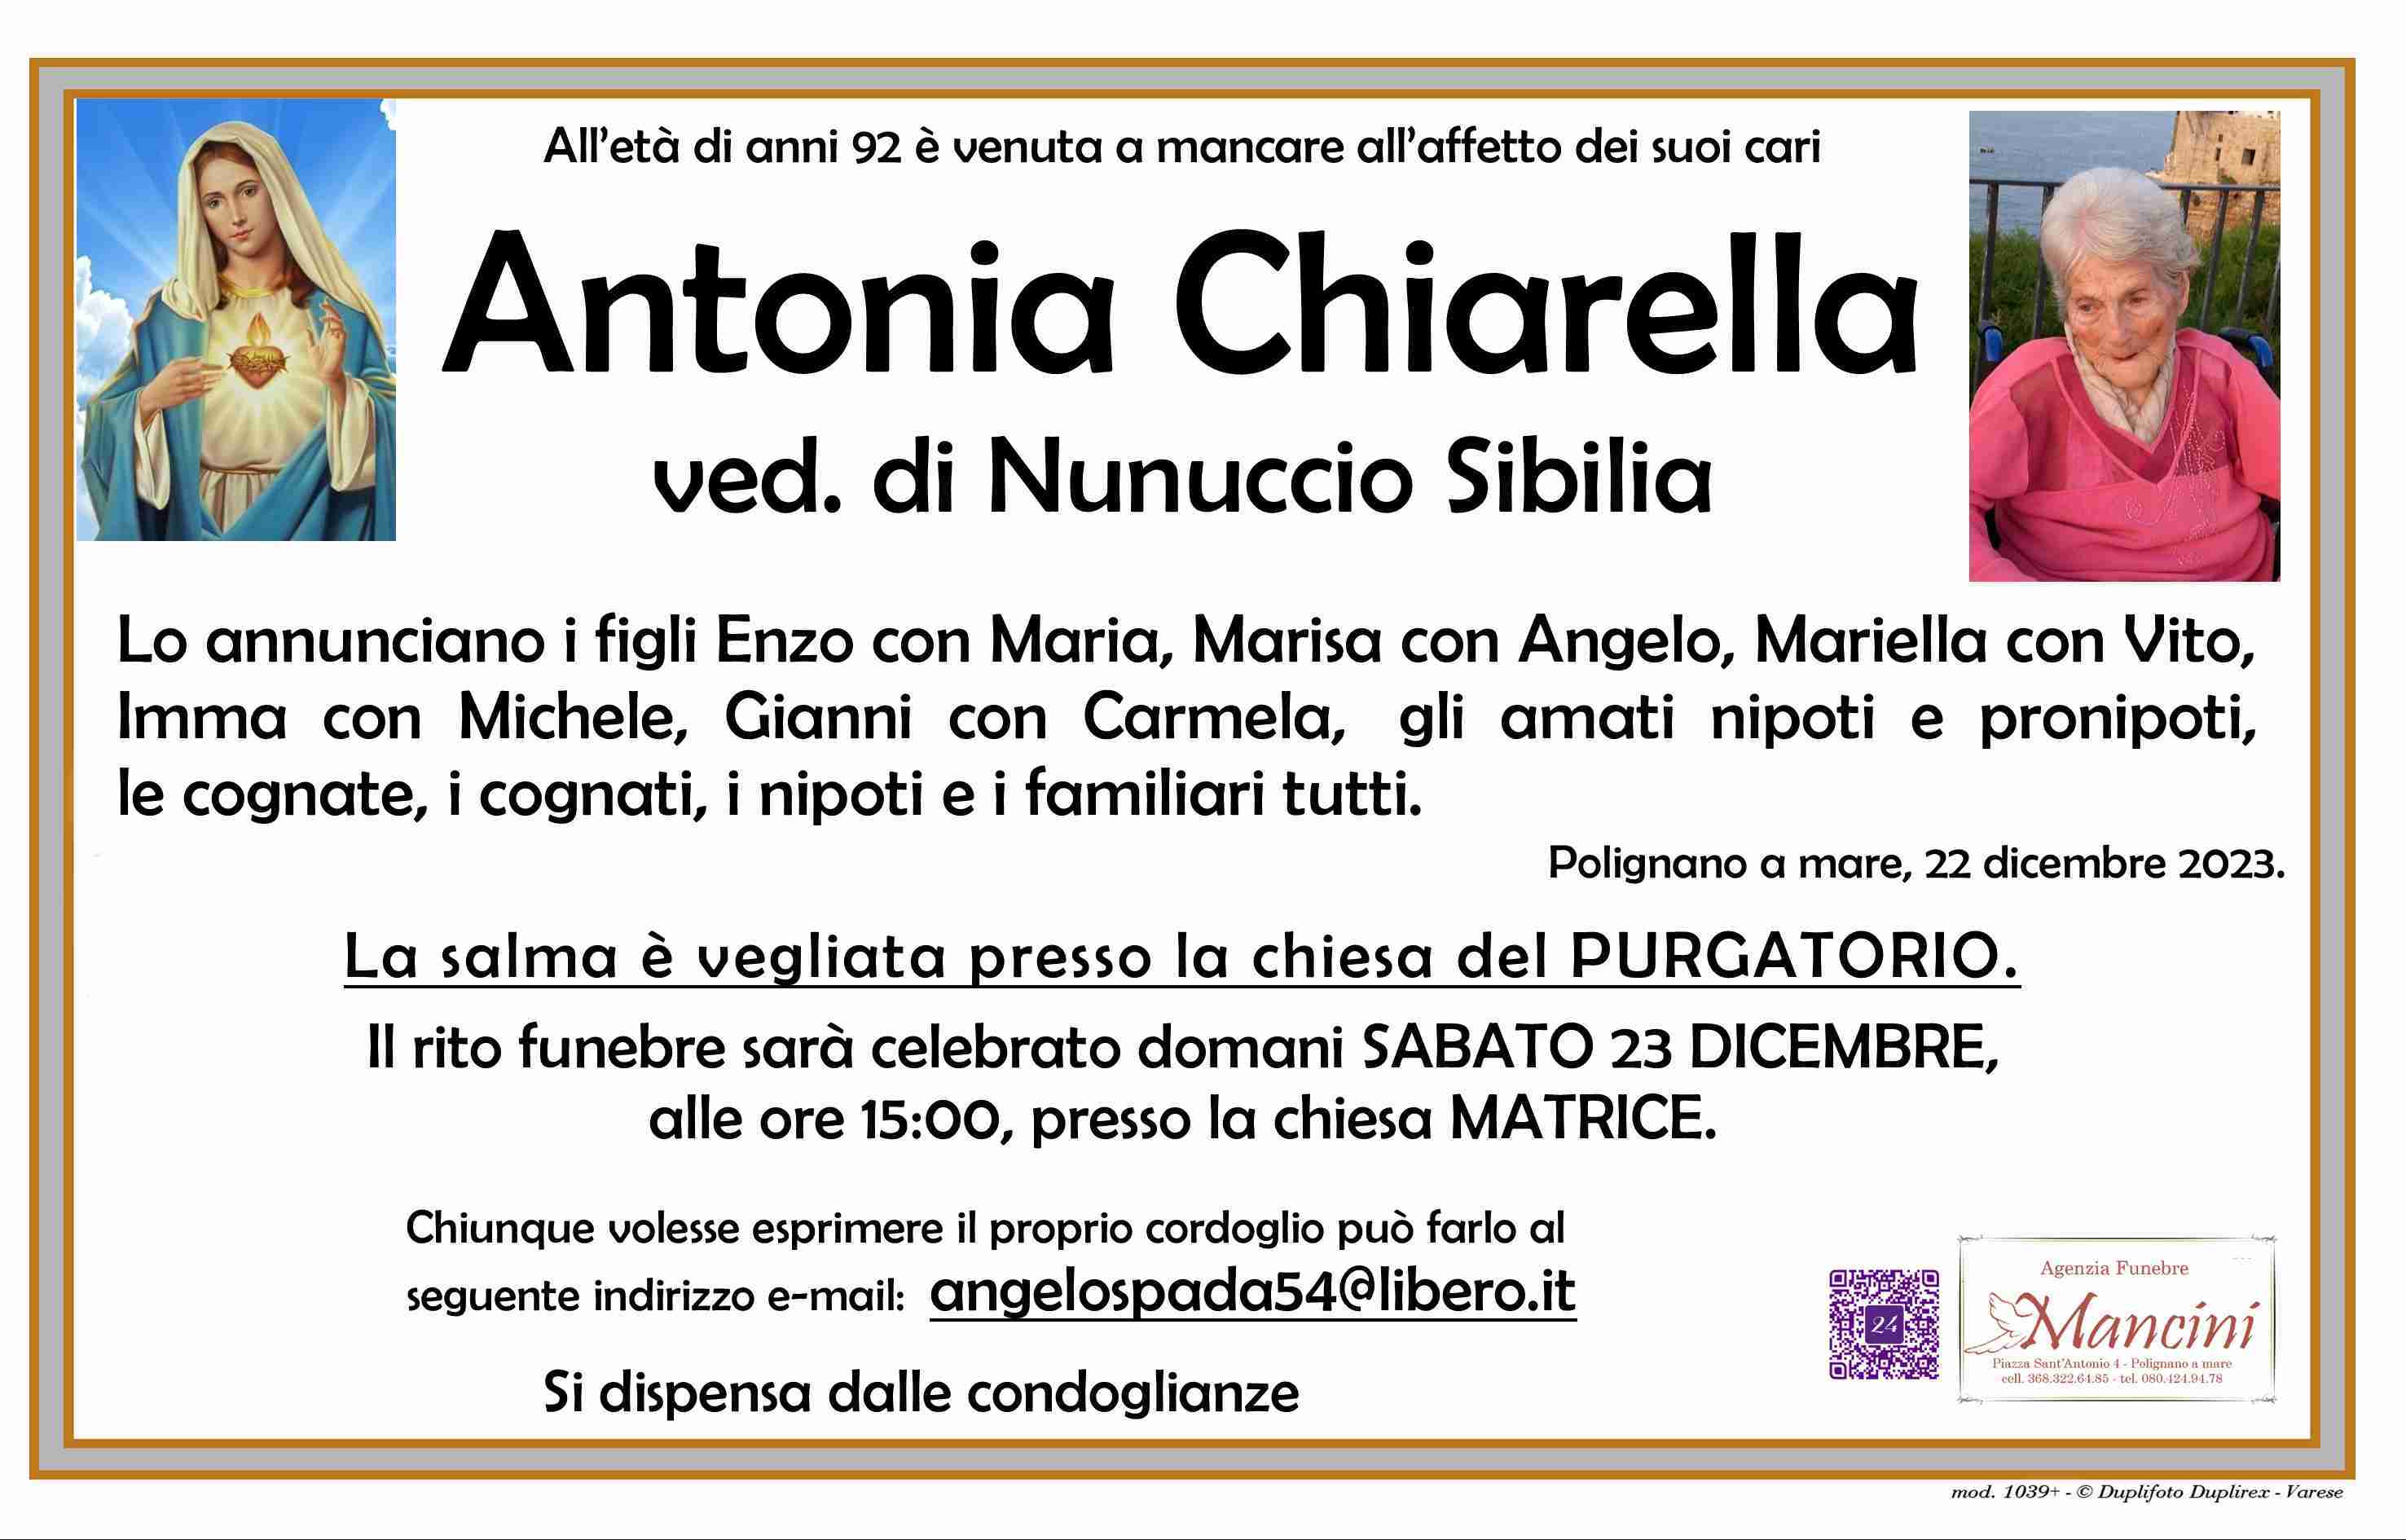 Antonia Chiarella